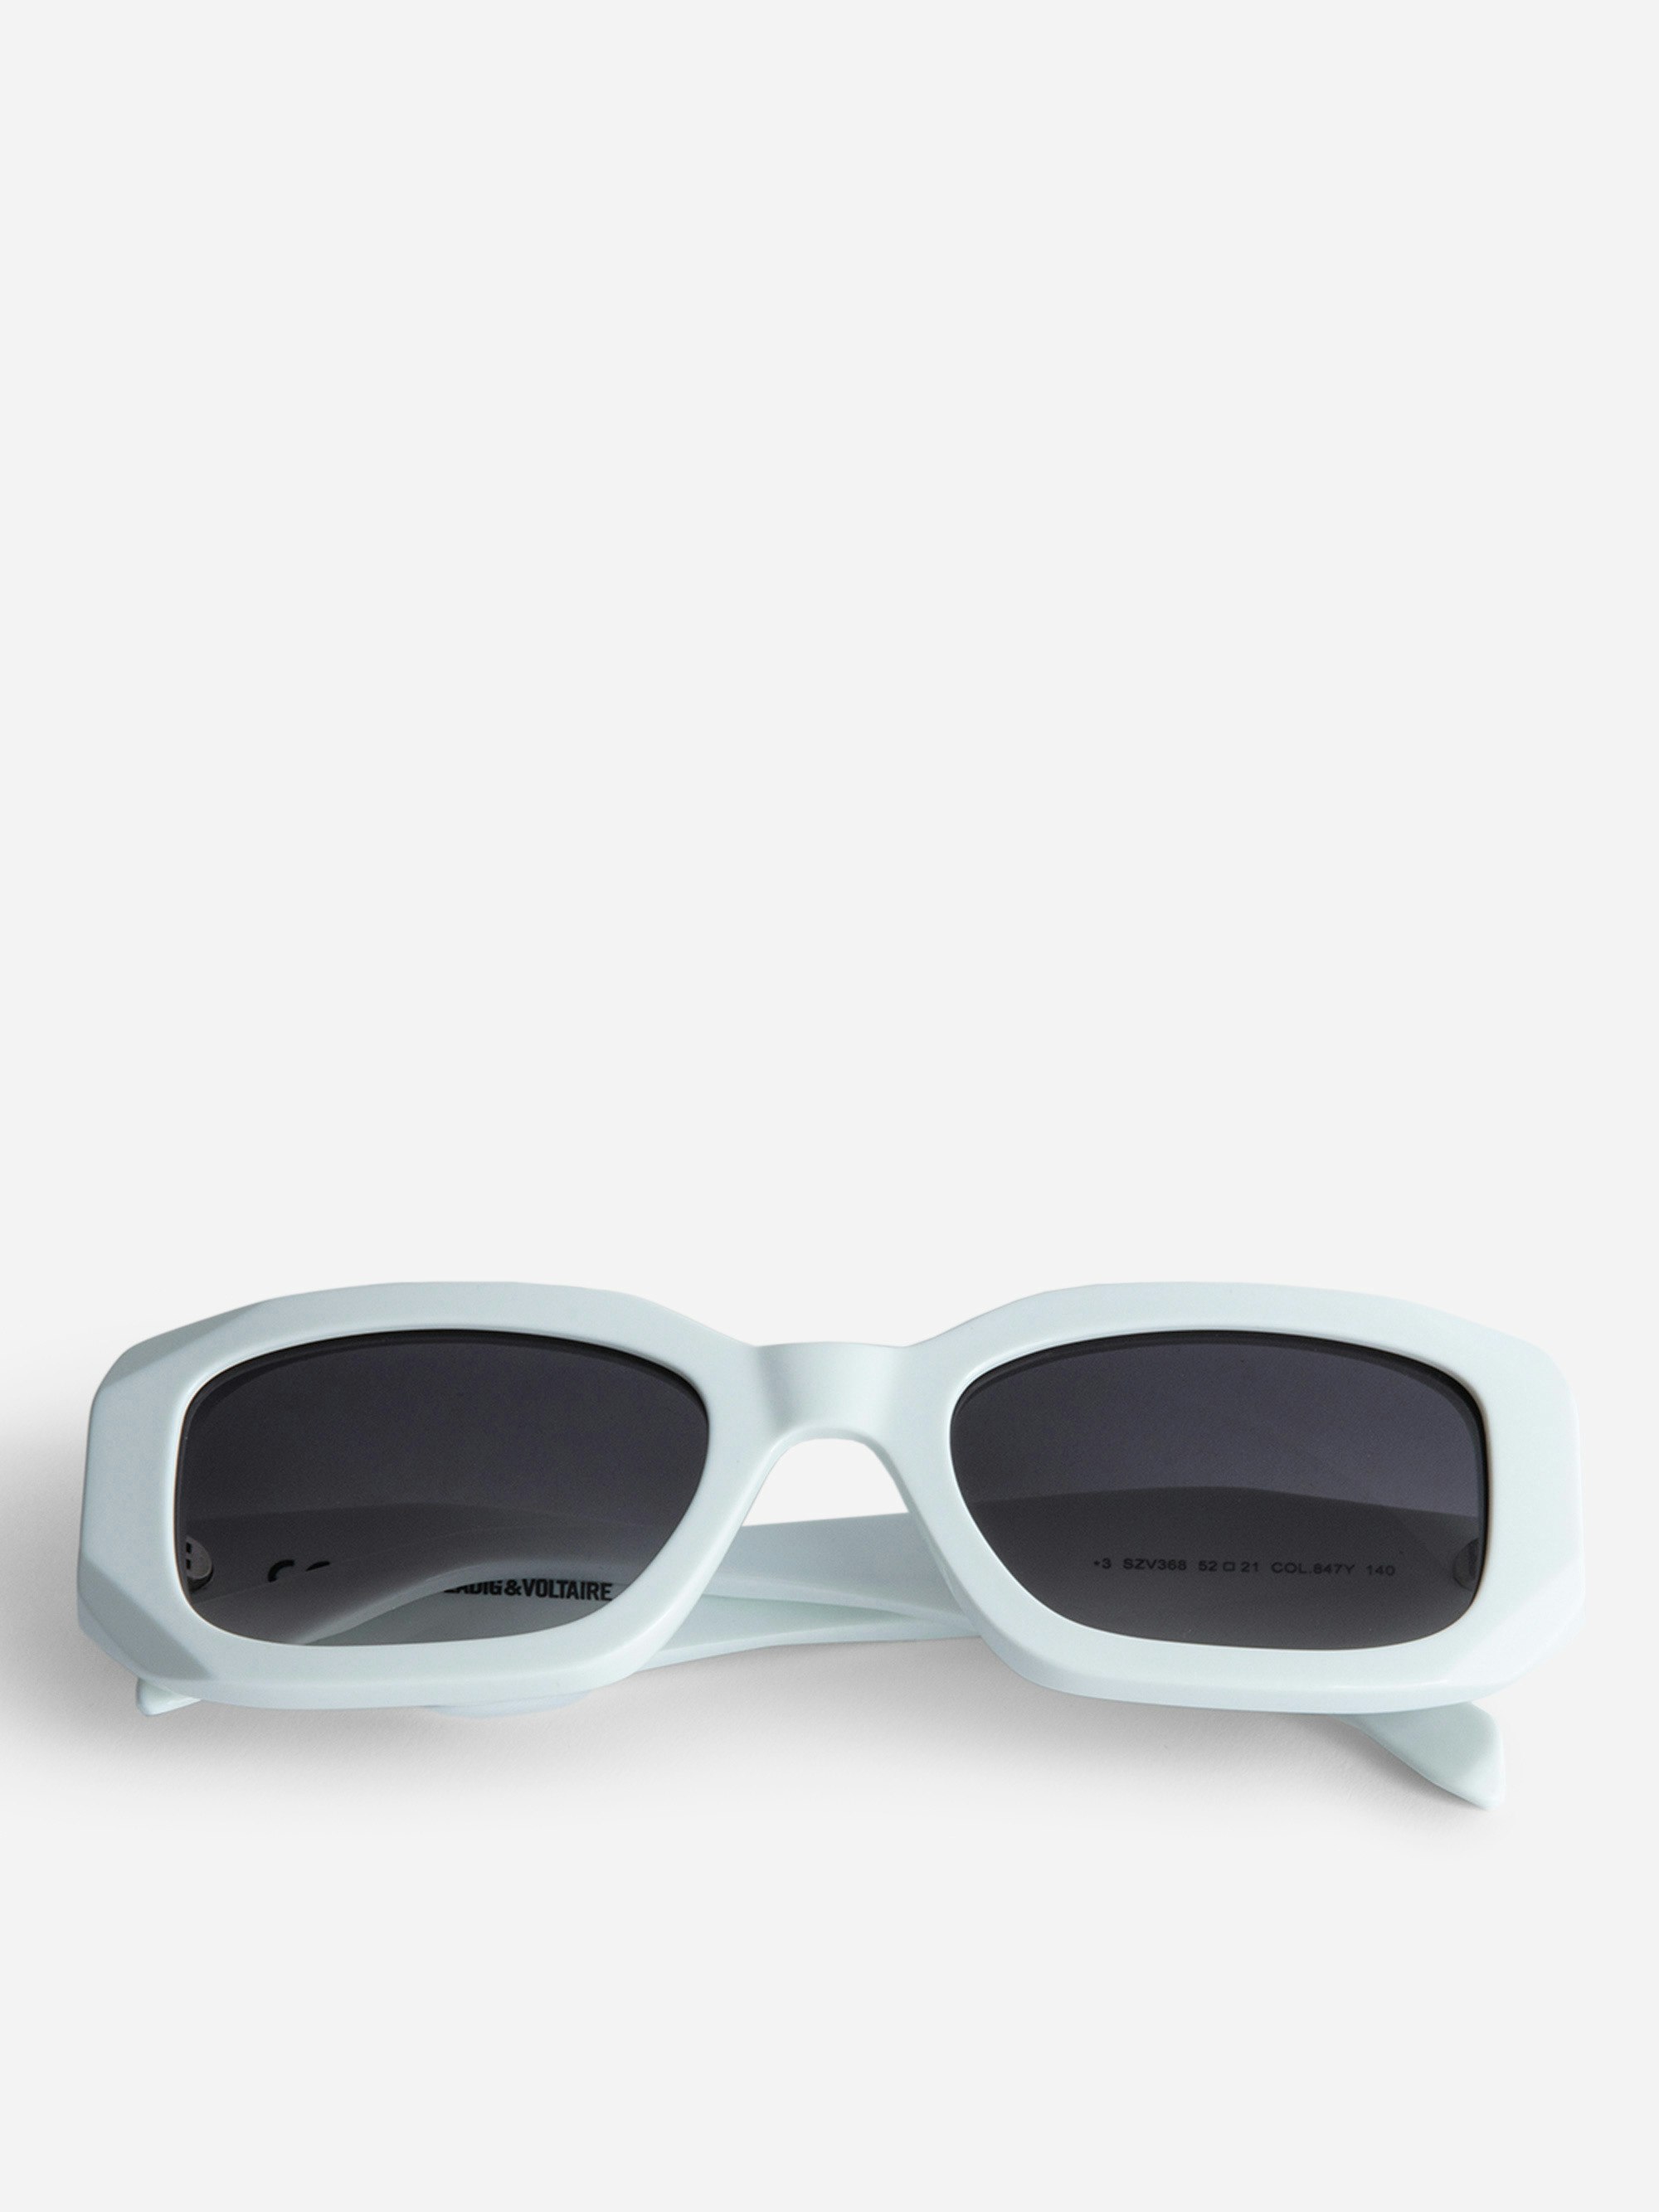 Sonnenbrille ZV23H3 - Weiße, rechteckige Unisex-Sonnenbrille mit Flügeln auf den destrukturierten Bügeln.